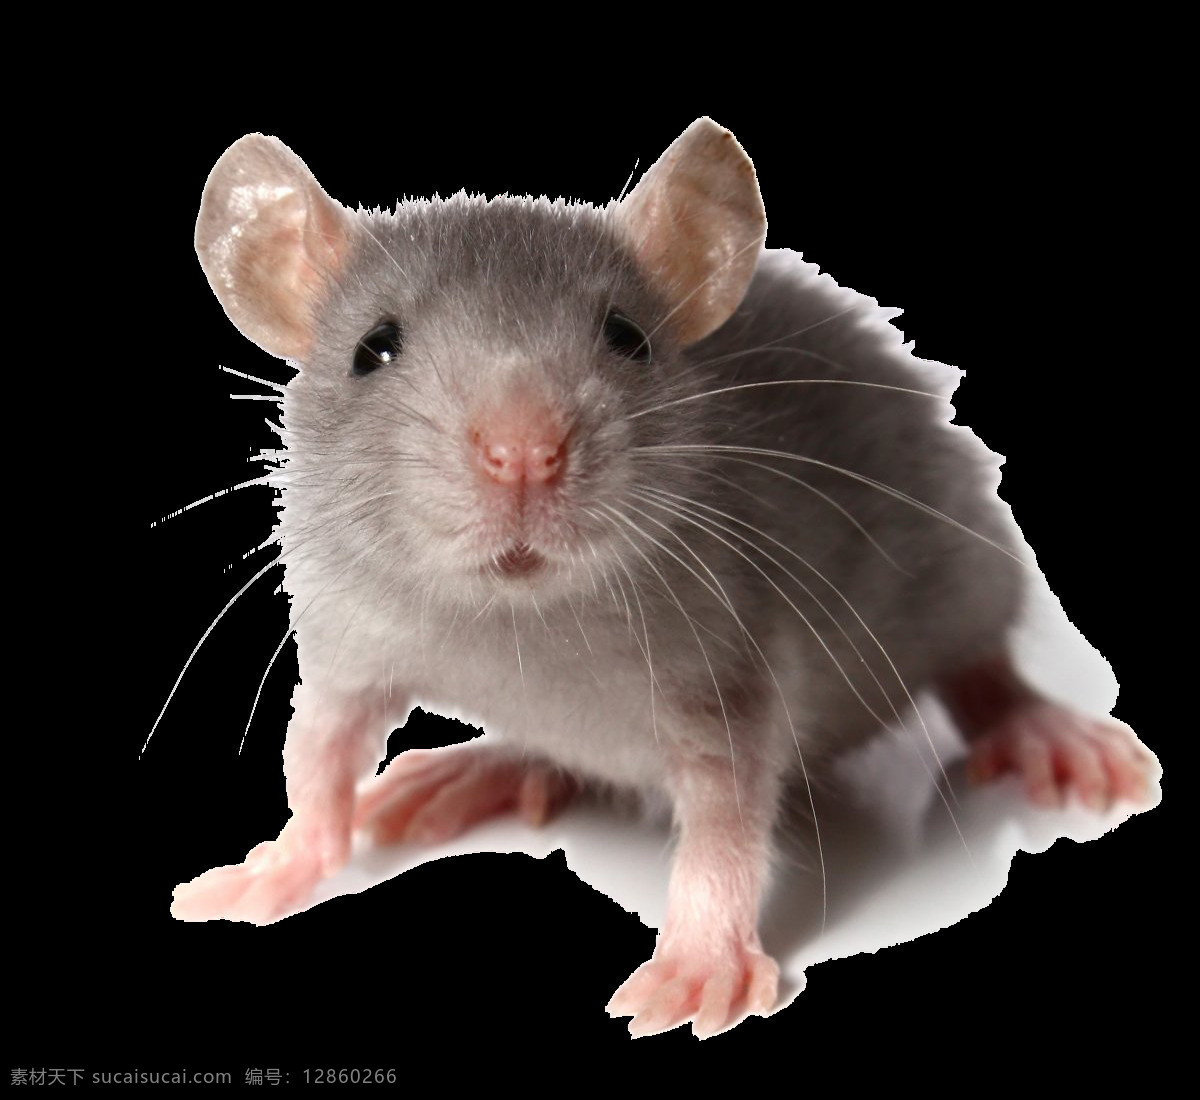 可爱 小 老鼠 免 抠 透明 图 层 变异老鼠 世界上的老鼠 巨型老鼠 可爱老鼠 简 笔画 大全 老鼠简笔画 彩色老鼠图片 老鼠图片大全 老鼠照片